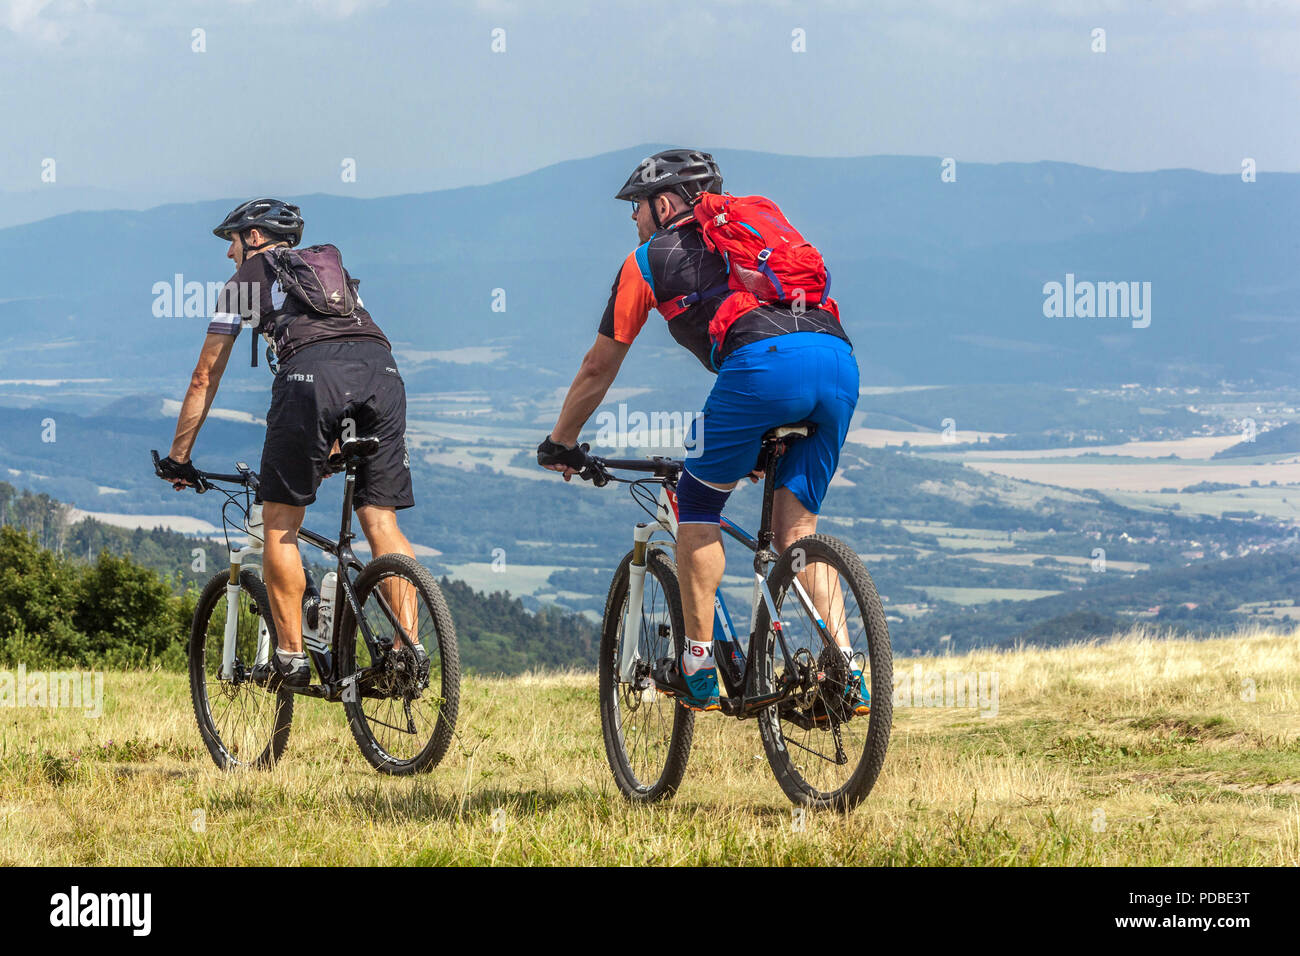 Motards vélo sur un sentier de montagne hommes vélo Velka Javorina colline frontière slovaque tchèque dans les Carpates blanches personnes vélo campagne sur une colline Banque D'Images